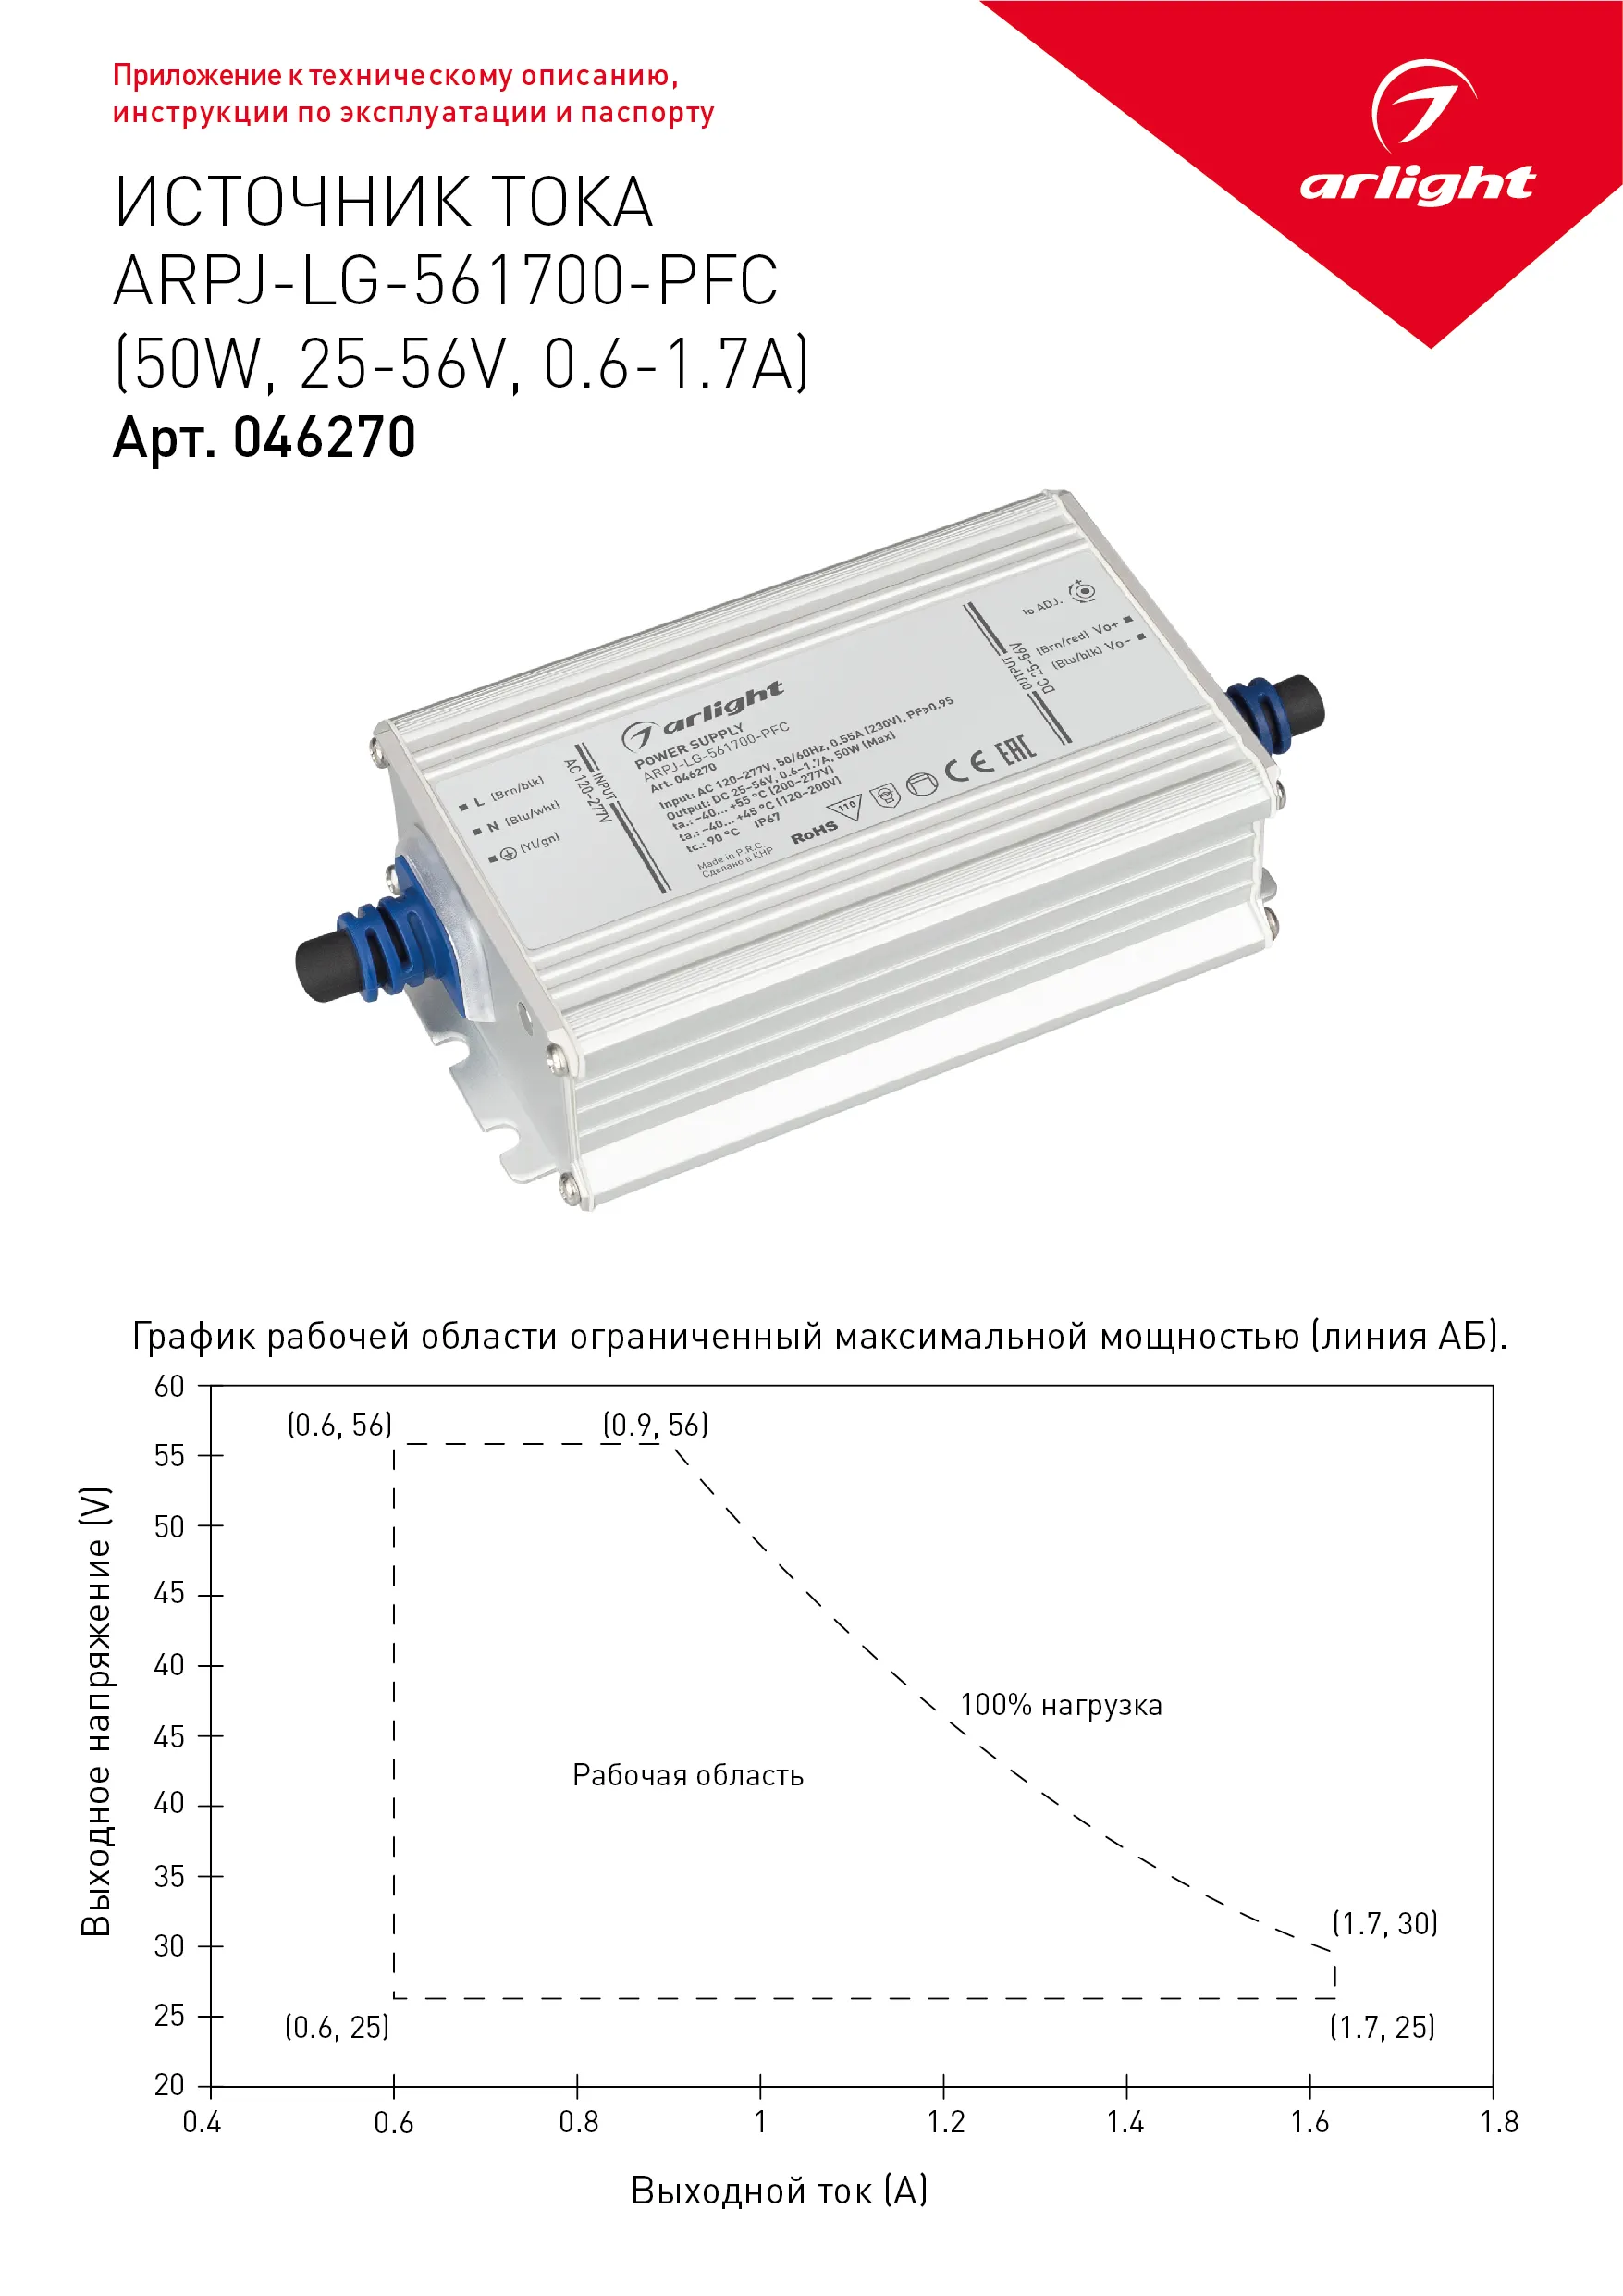 Блок питания ARPJ-LG-561700-PFC (50W, 25-56V, 0.6-1.7A) (Arlight, IP67 Металл, 5 лет) - Изображение